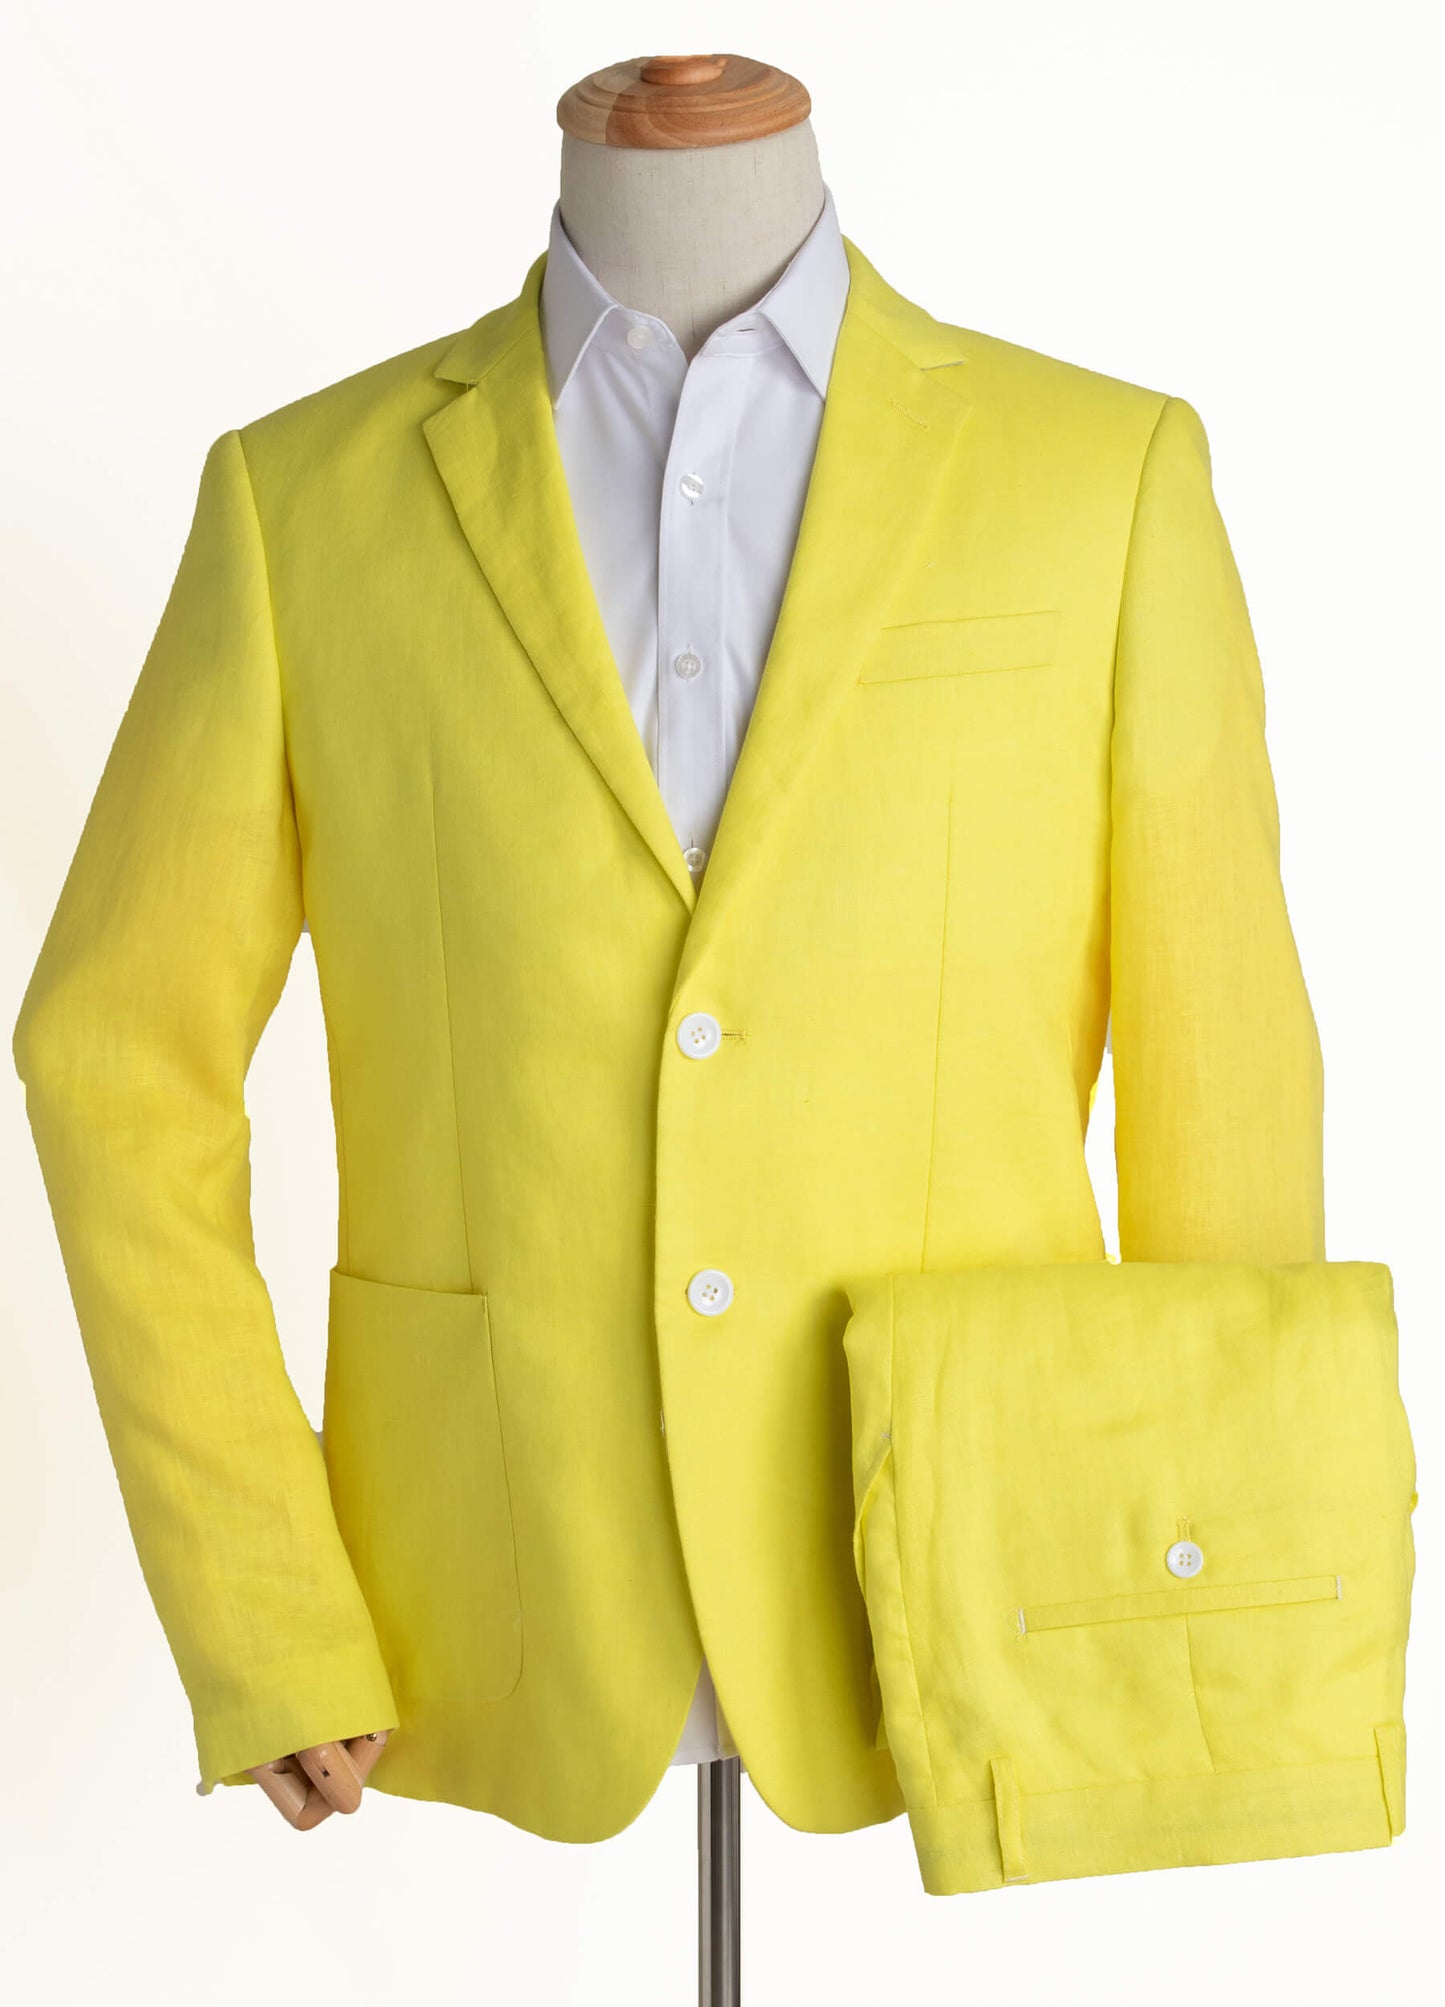 yellow linen suit for men